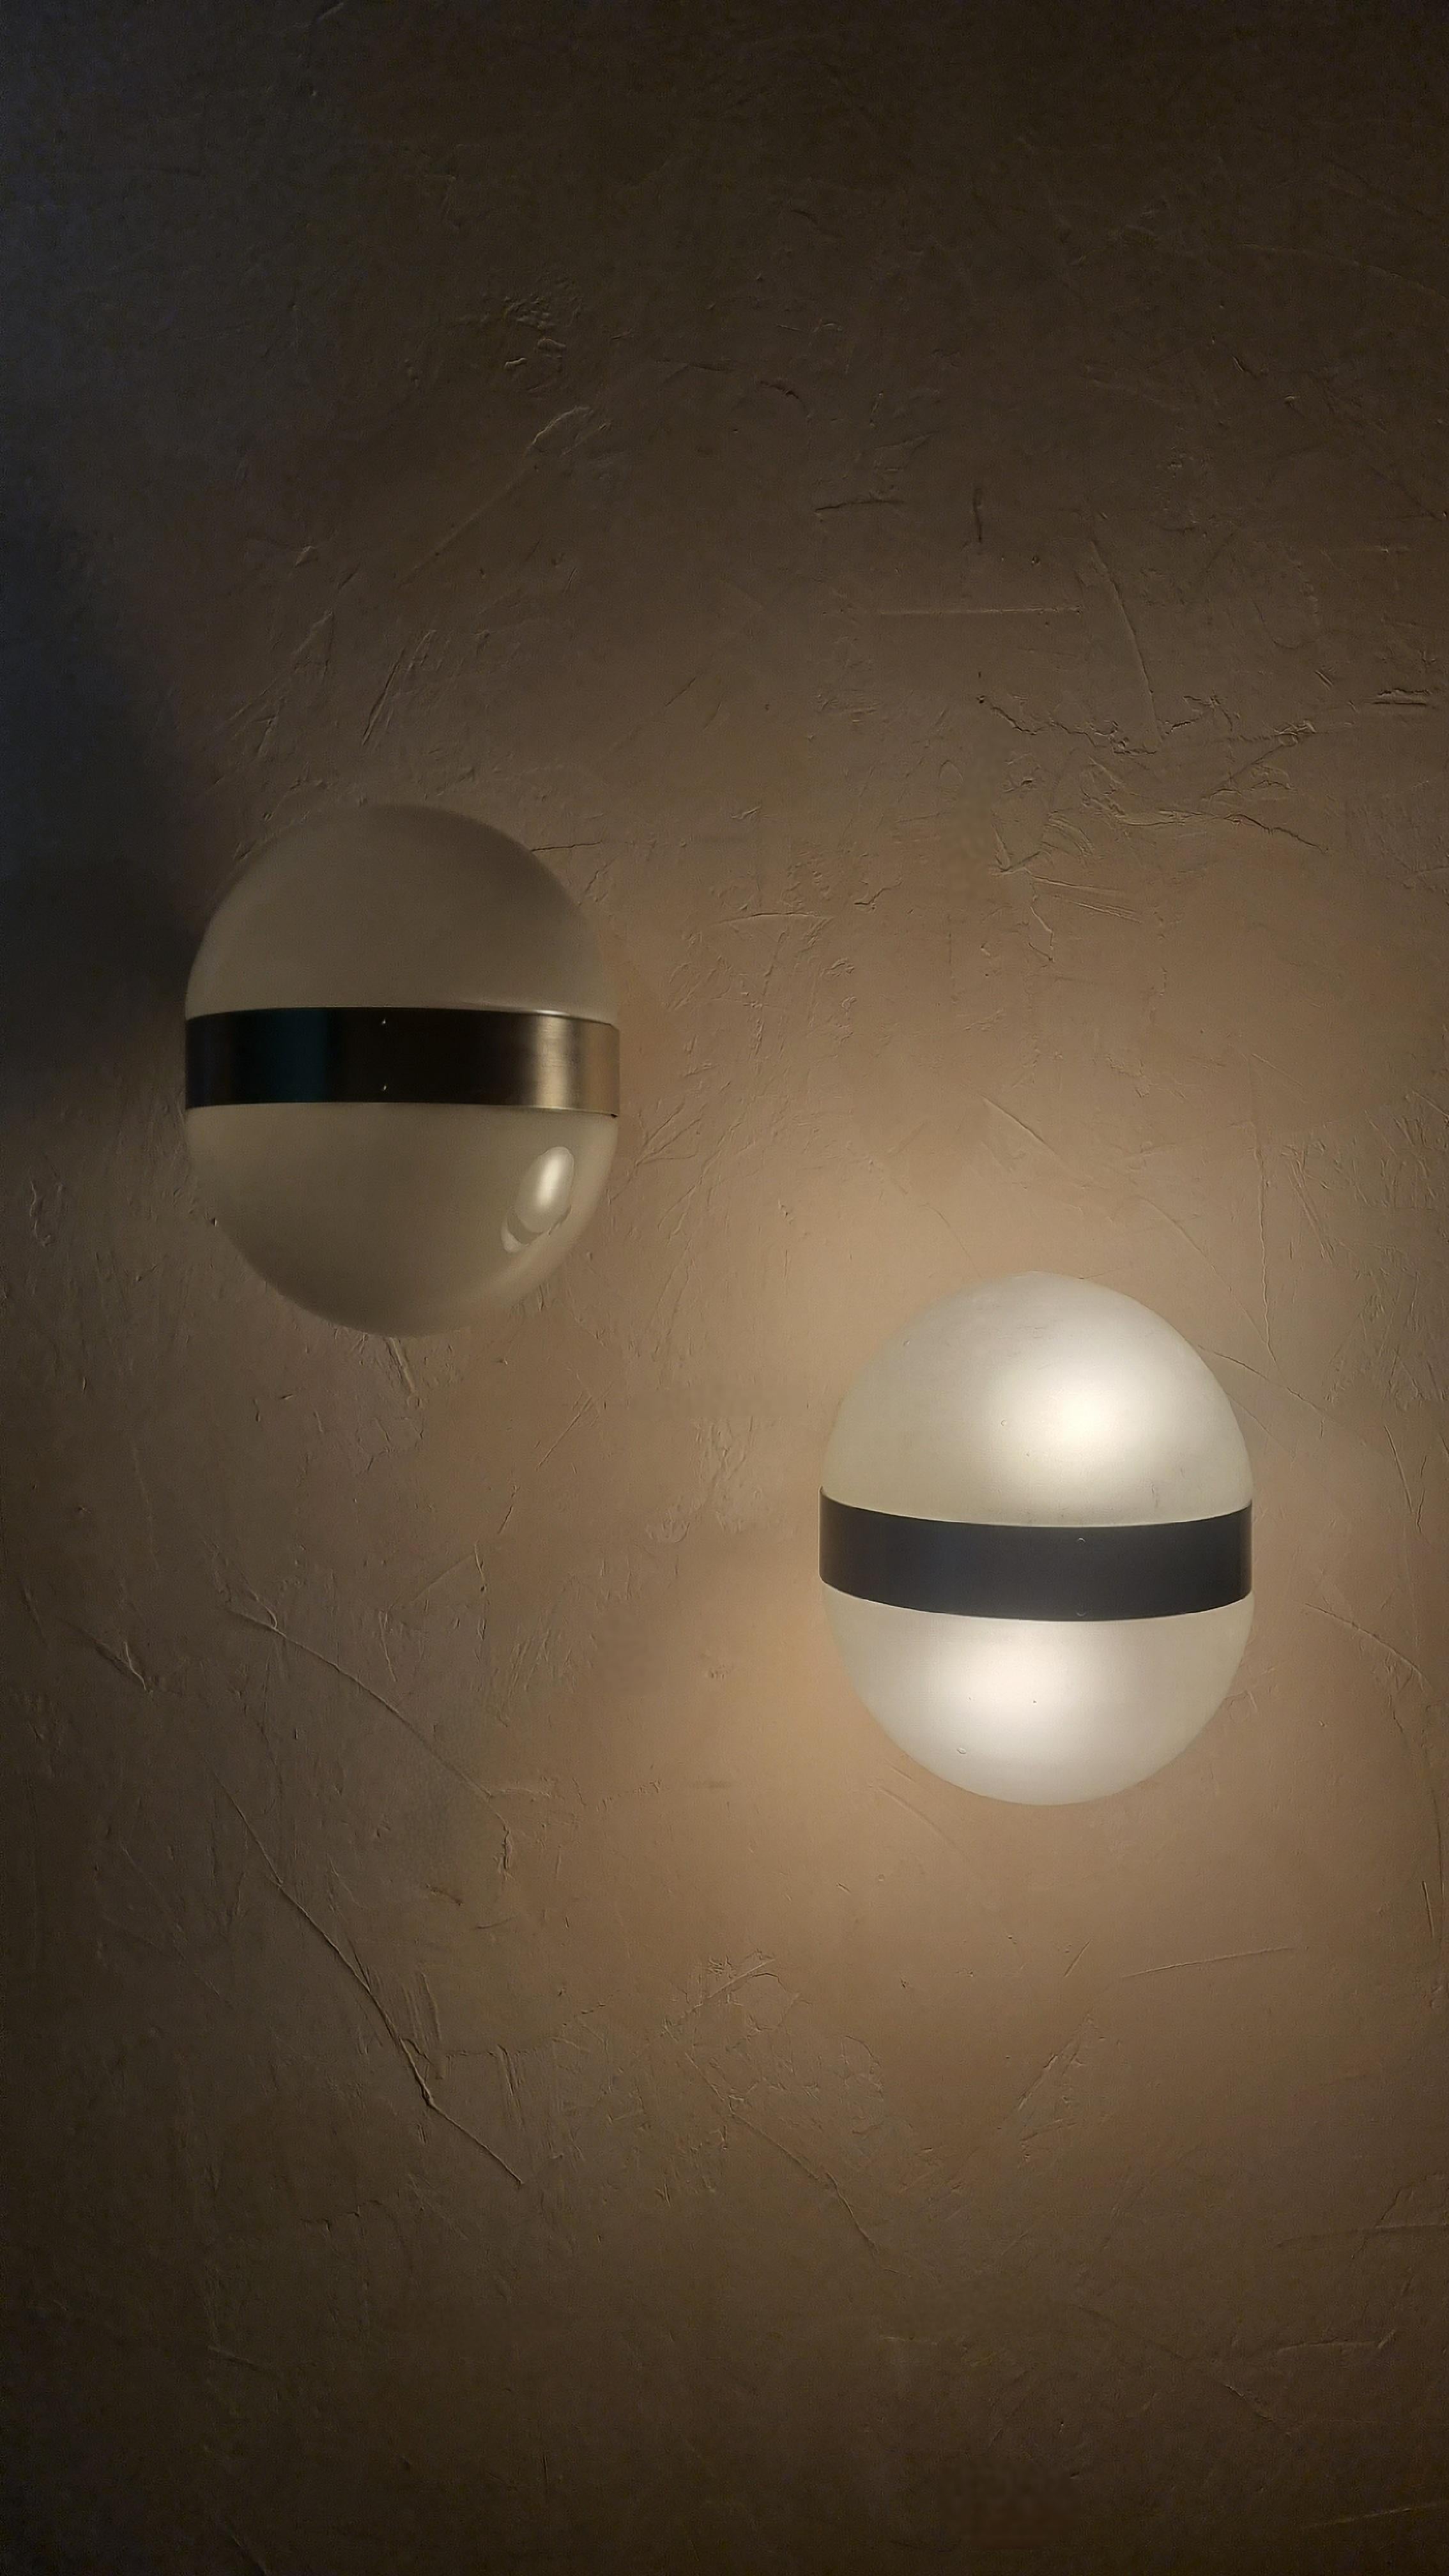 Paar von 2 Clio Wandleuchten, entworfen von Sergio Mazza für Artemide im Jahre 1963, Lampenschirm aus Milchglas, Struktur aus vernickeltem Messing, jede Lampe  2 übereinander liegende Lichtpunkte, die ein warmes und weiches Licht ausstrahlen. Für E